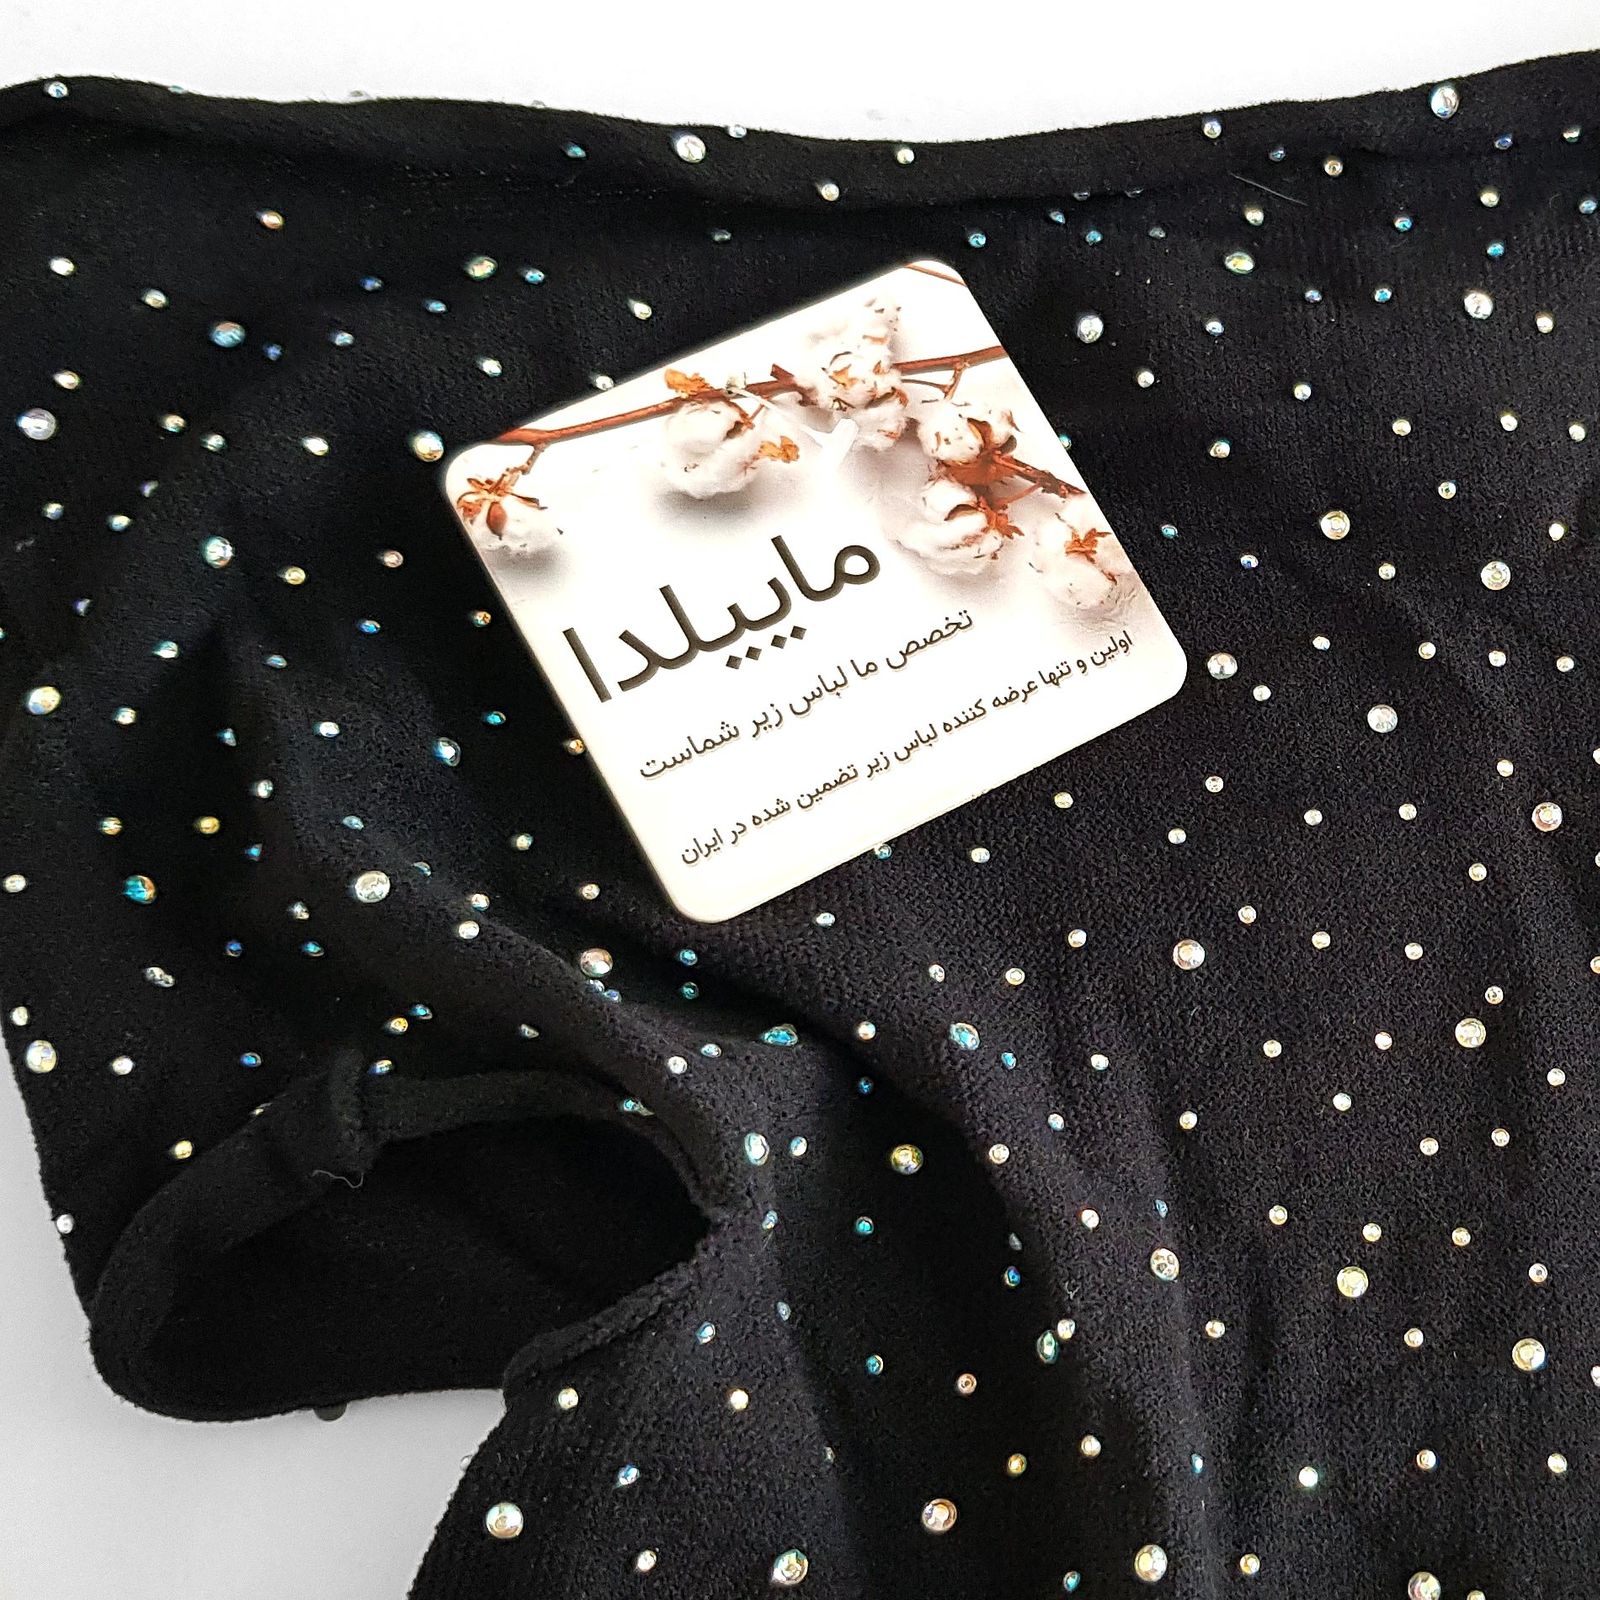 لباس خواب زنانه ماییلدا مدل نگین دار فانتزی کد 4860-7143 رنگ مشکی -  - 3